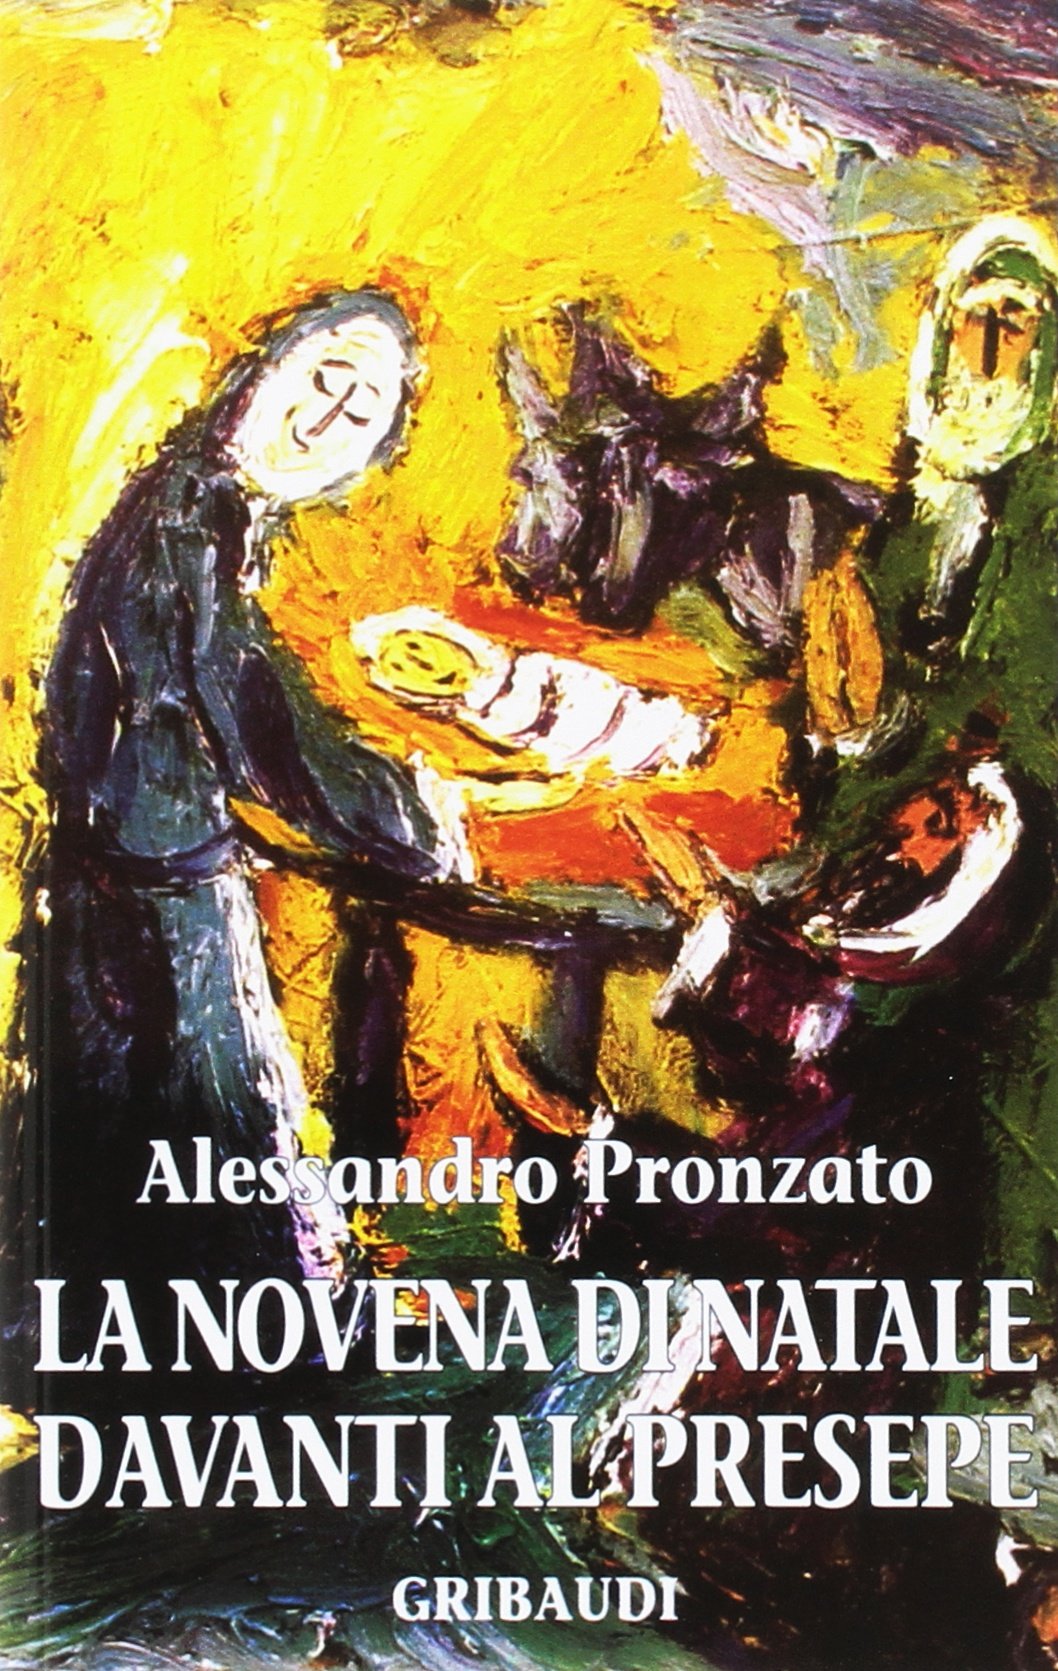 Alessandro Pronzato - La novena di Natale davanti al Presepe